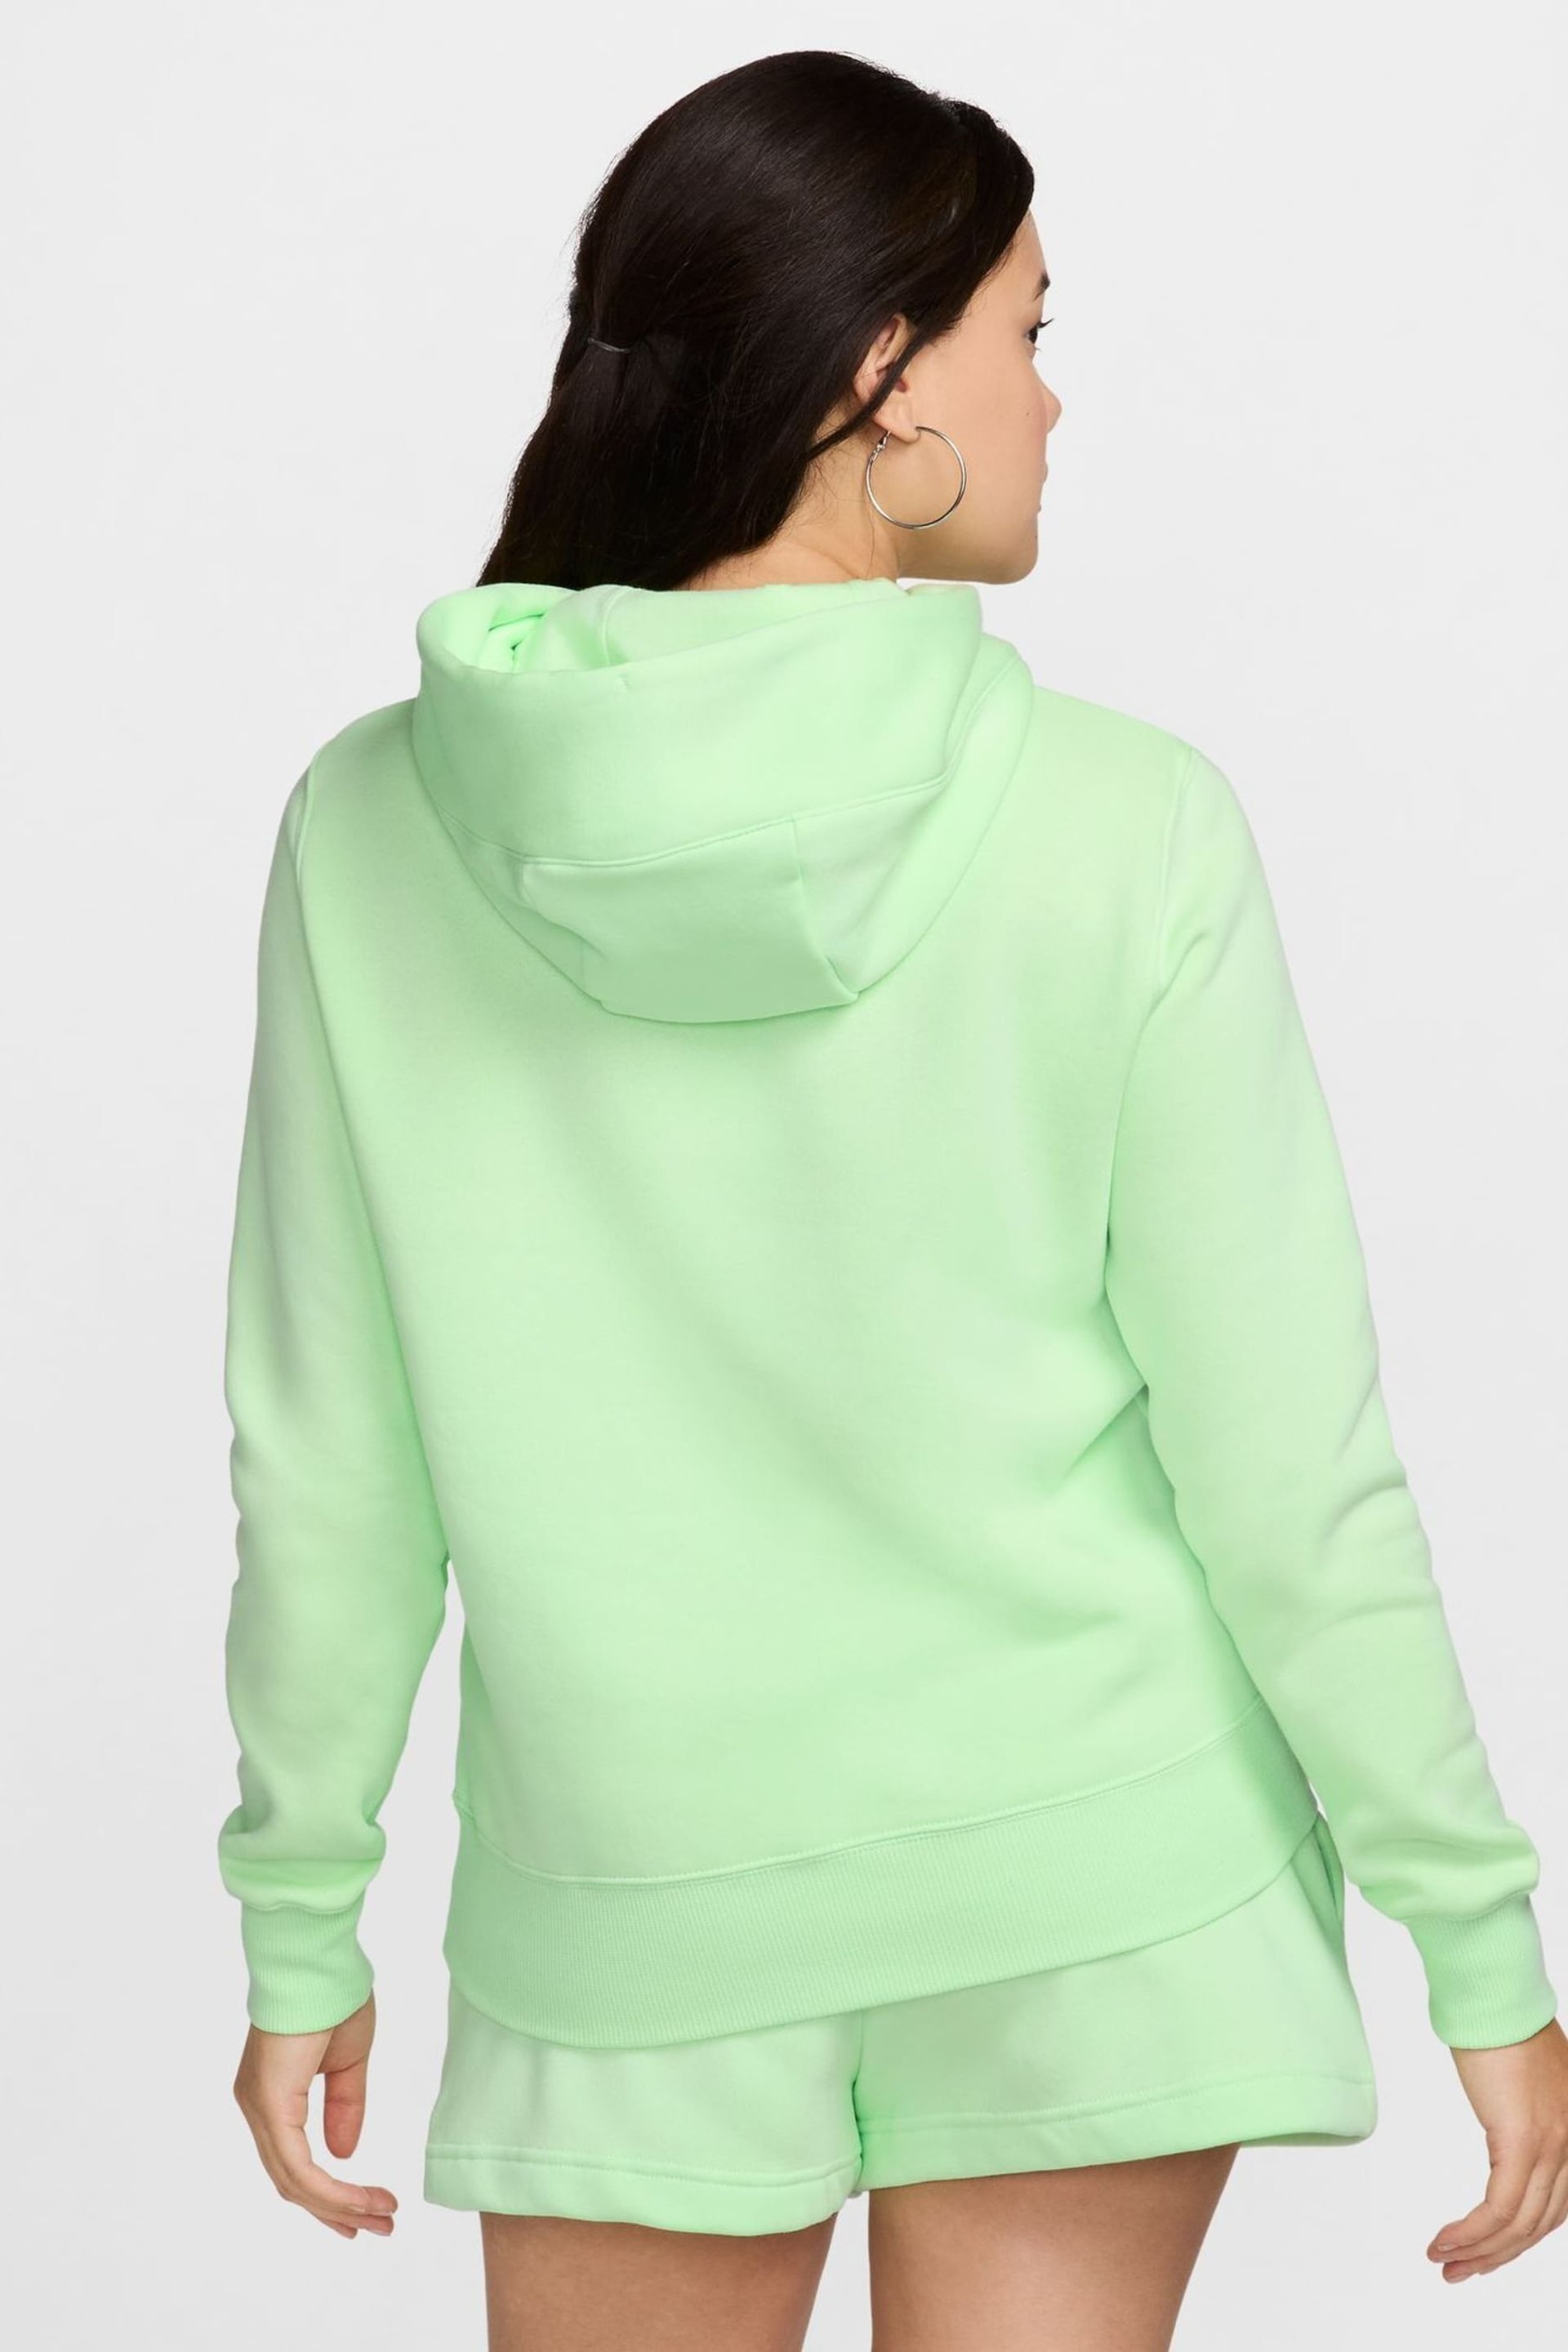 Nike Green Sportswear Phoenix Fleece Pullover Hoodie - Image 2 of 9